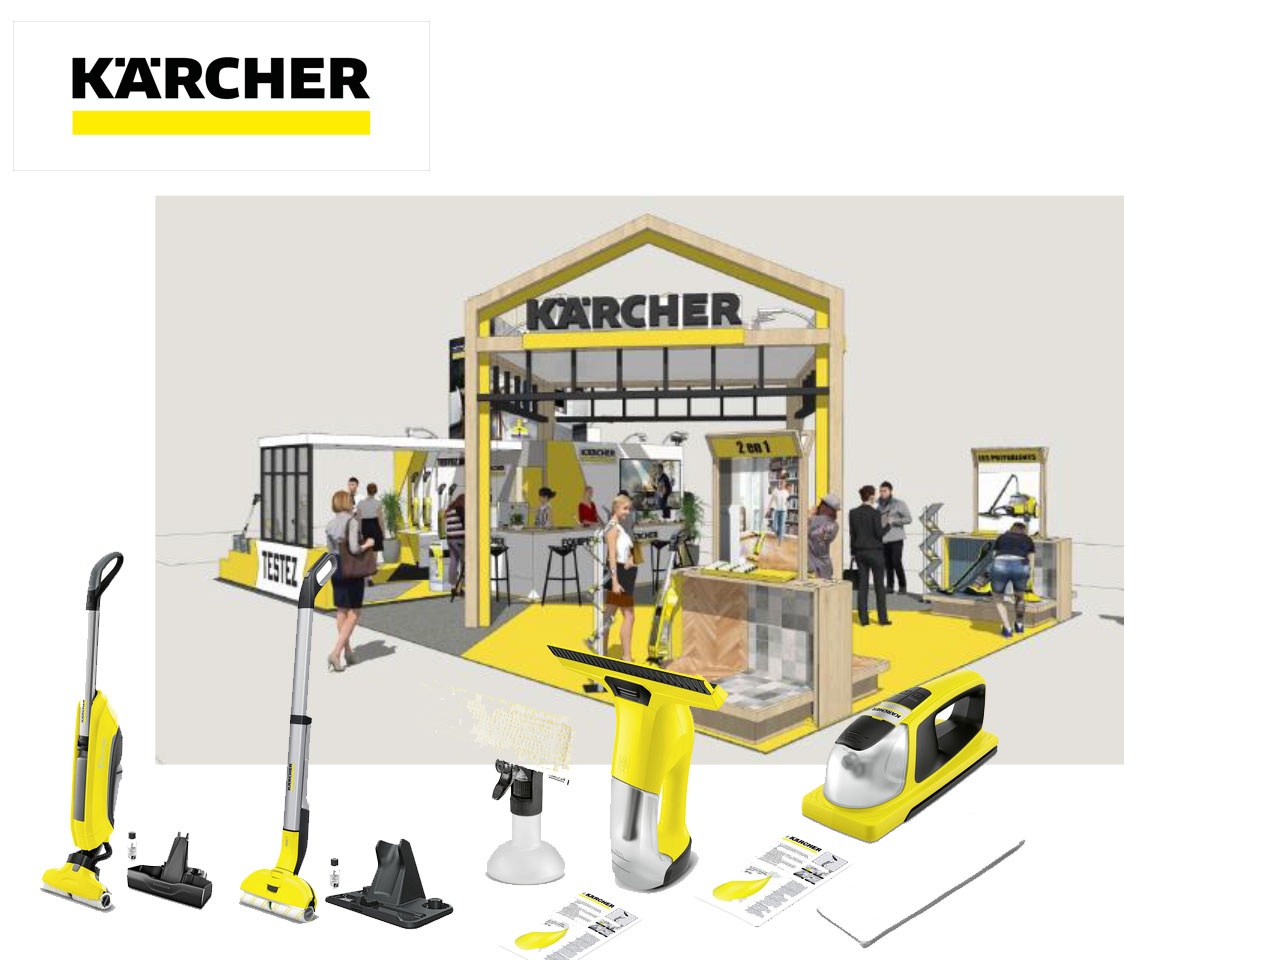 Le nettoyeur de sols FC5 de Kärcher élu produit de l'année 2018